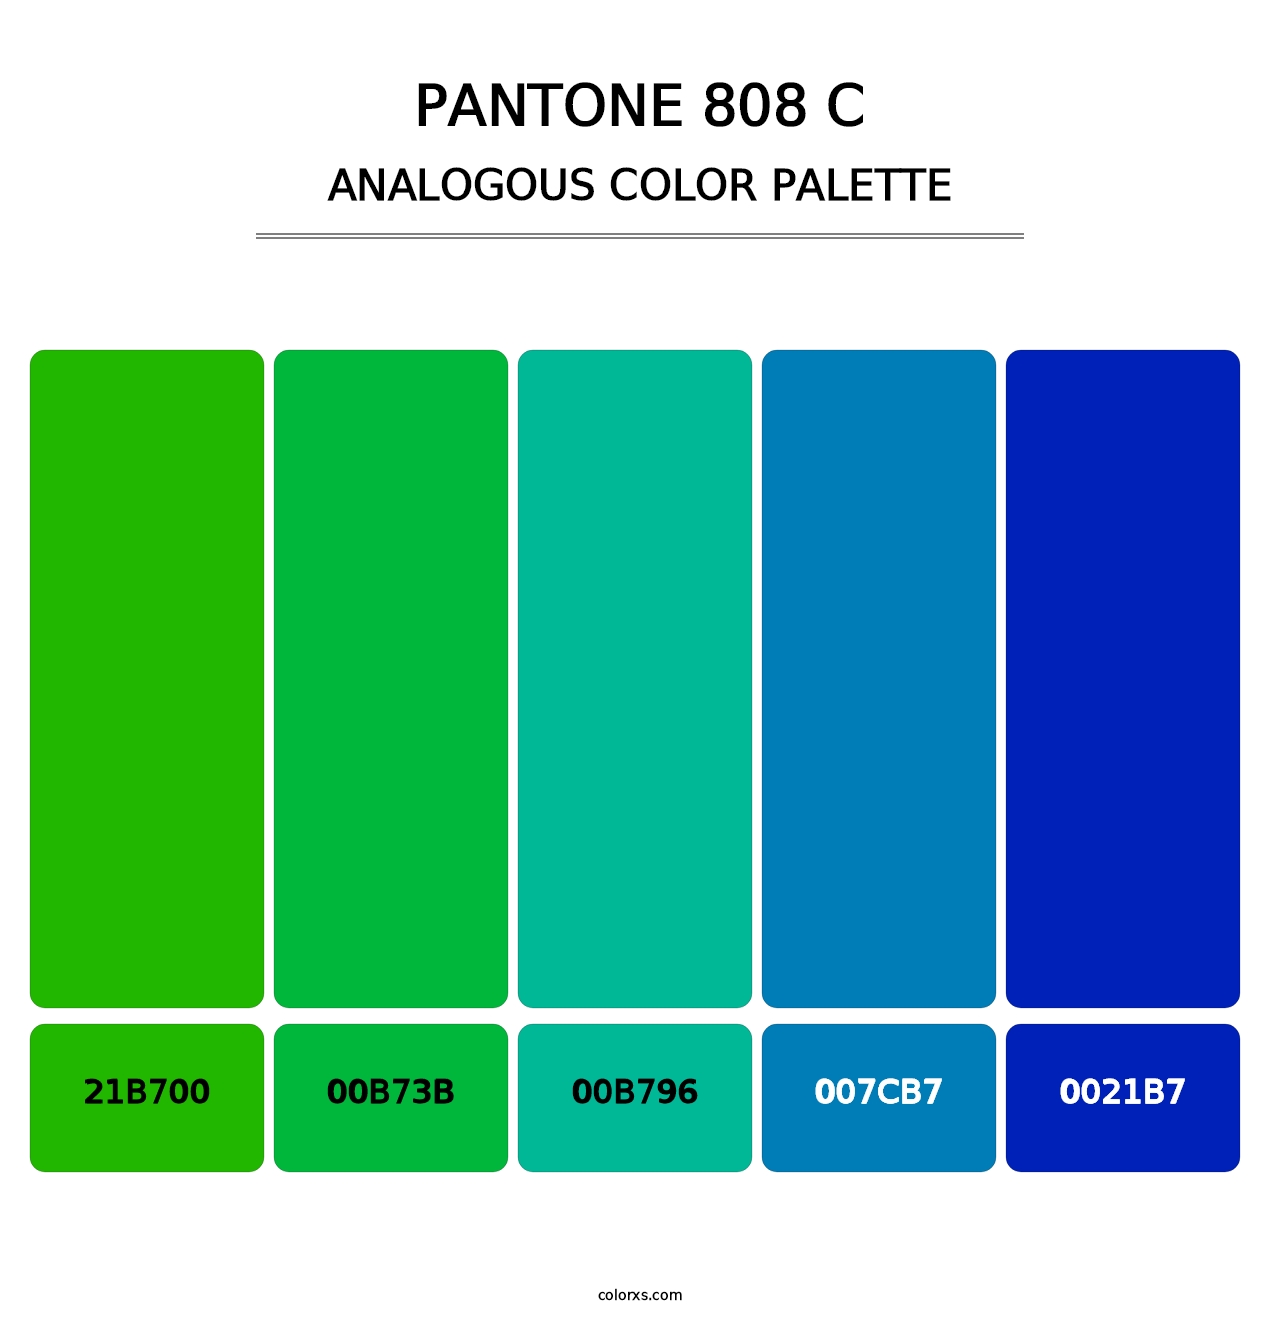 PANTONE 808 C - Analogous Color Palette